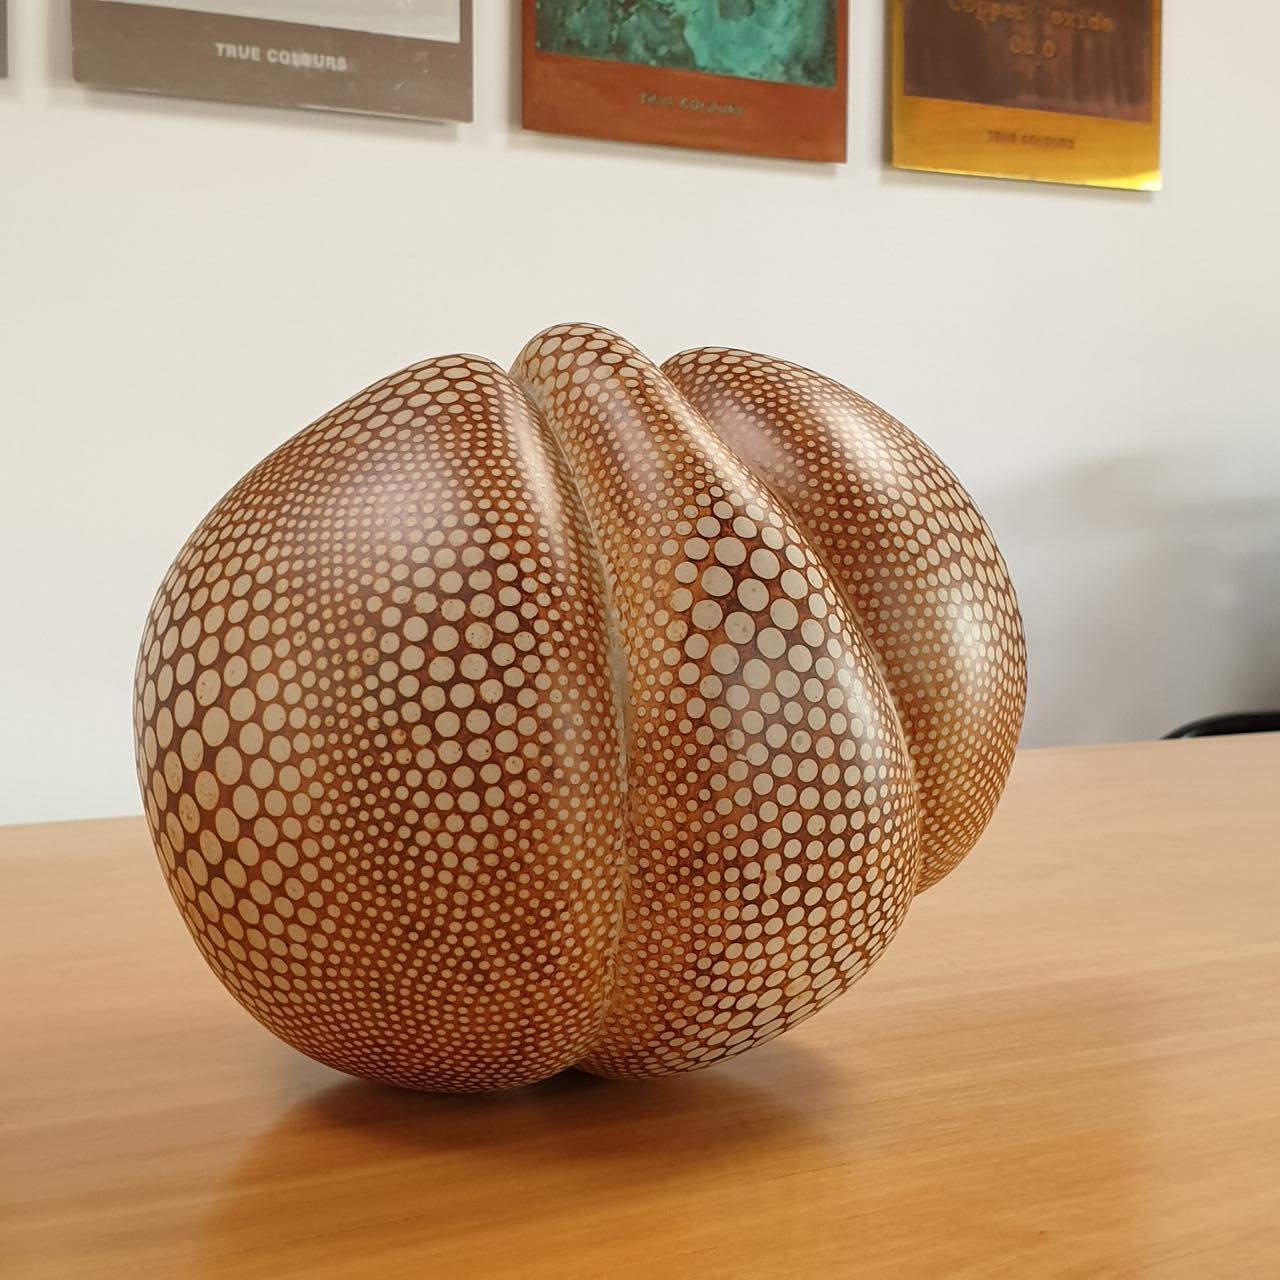 Kokon gepunktet - contemporary modern abstract organic ceramic sculpture object - Sculpture by Petra Benndorf